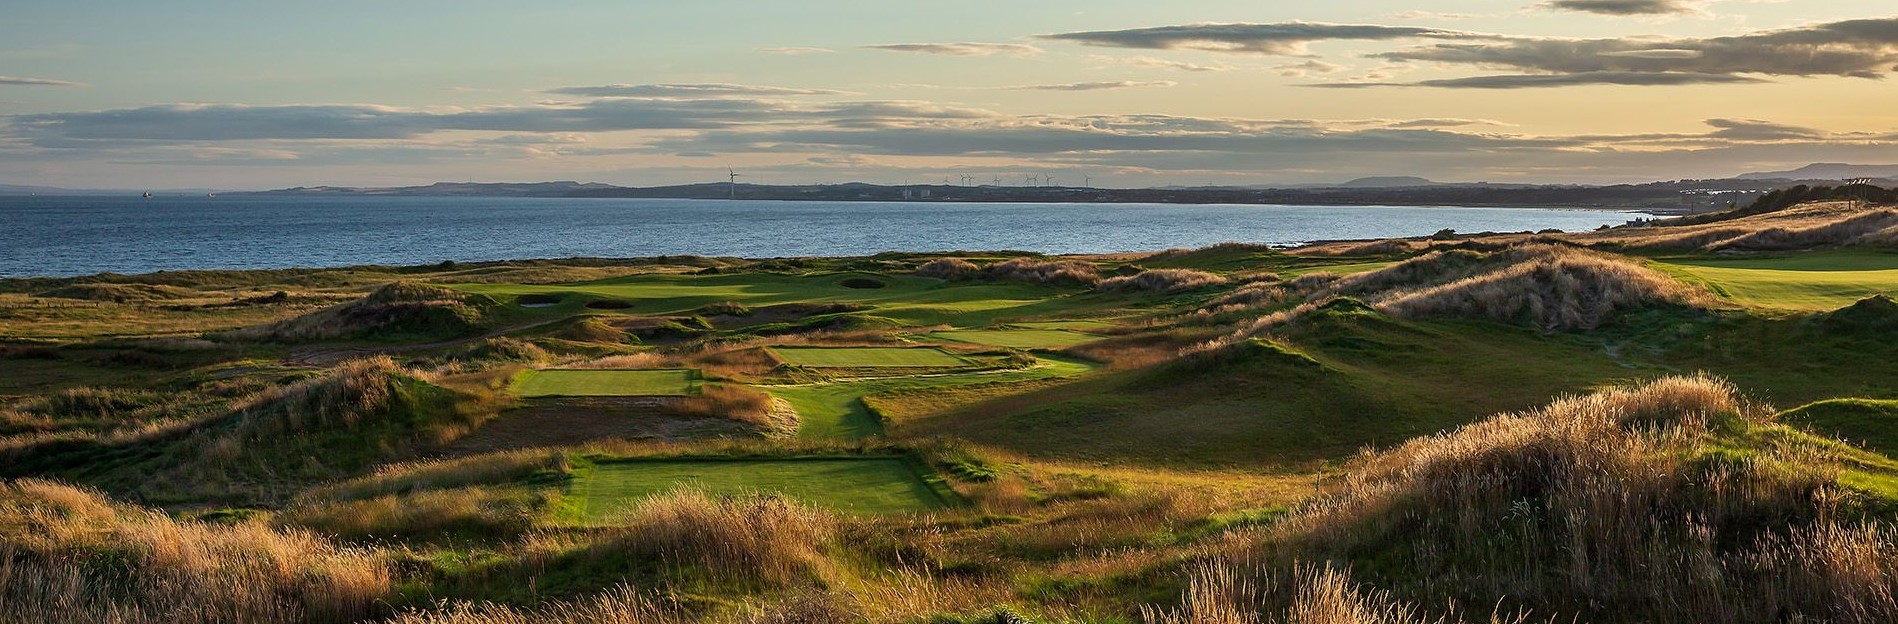 Dumbarnie Links Golf Course Scotland